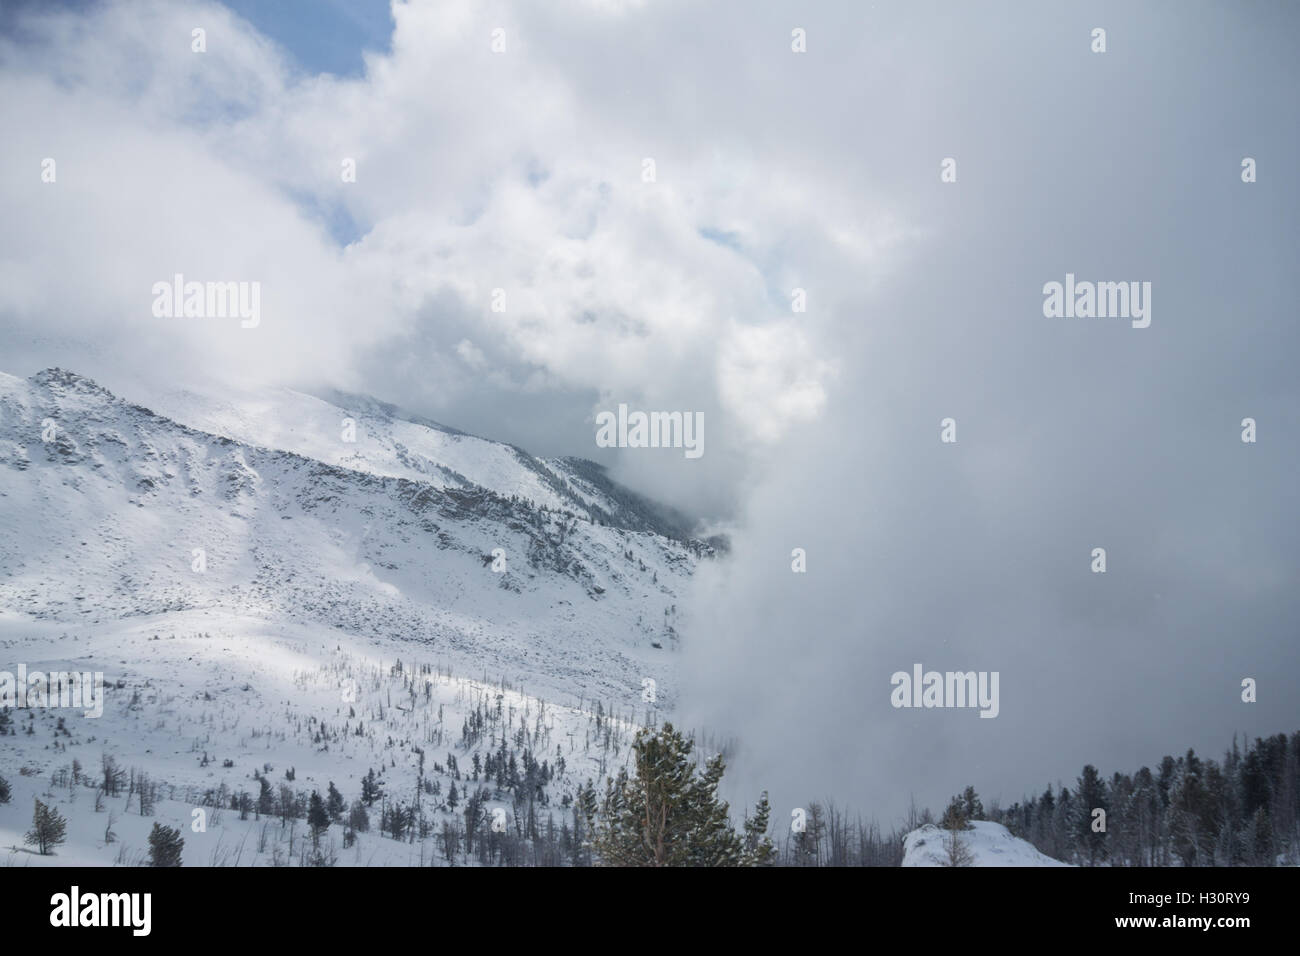 Nube de nieve cubre la cordillera y árboles Foto de stock